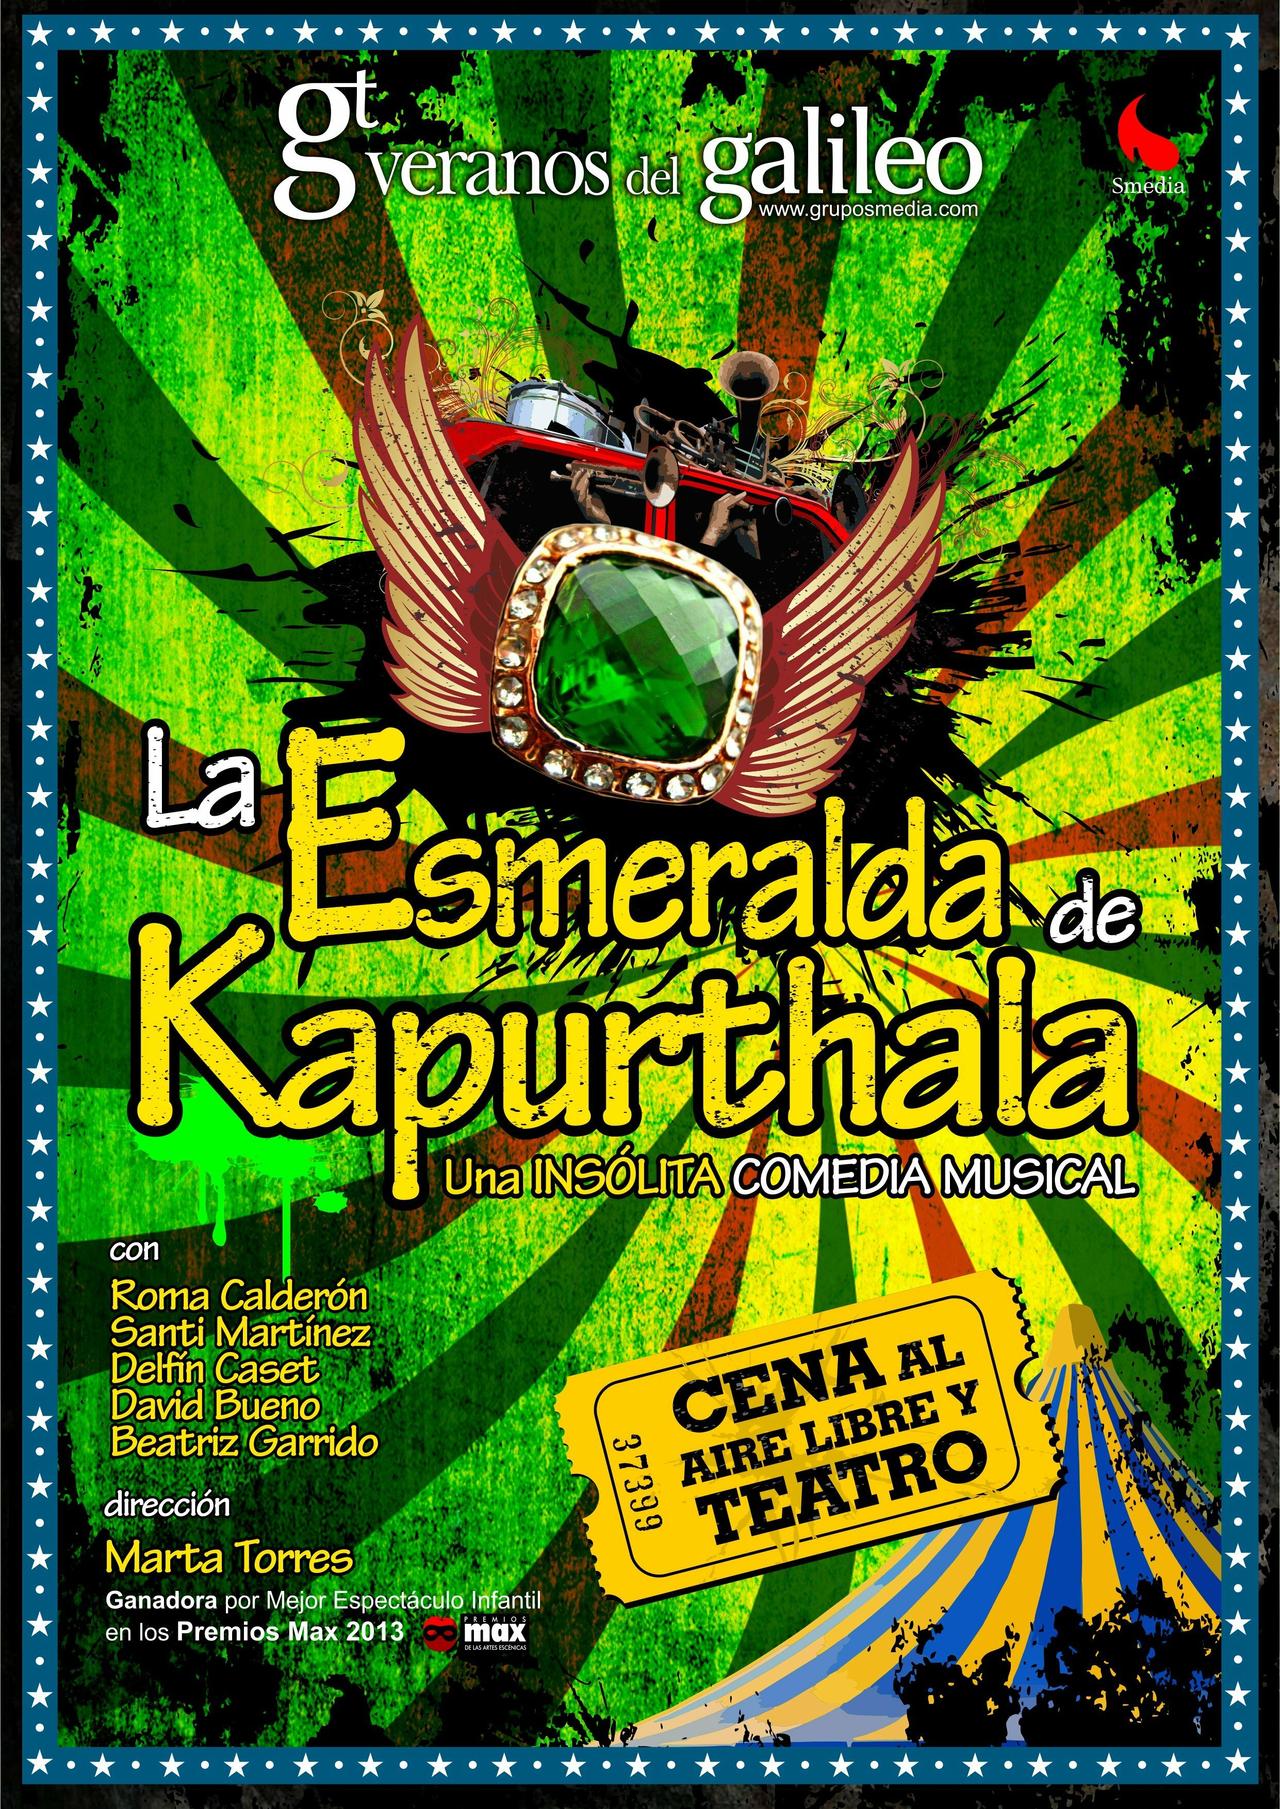 Esmeralda de Kapurthala - Veranos de la villa 2013